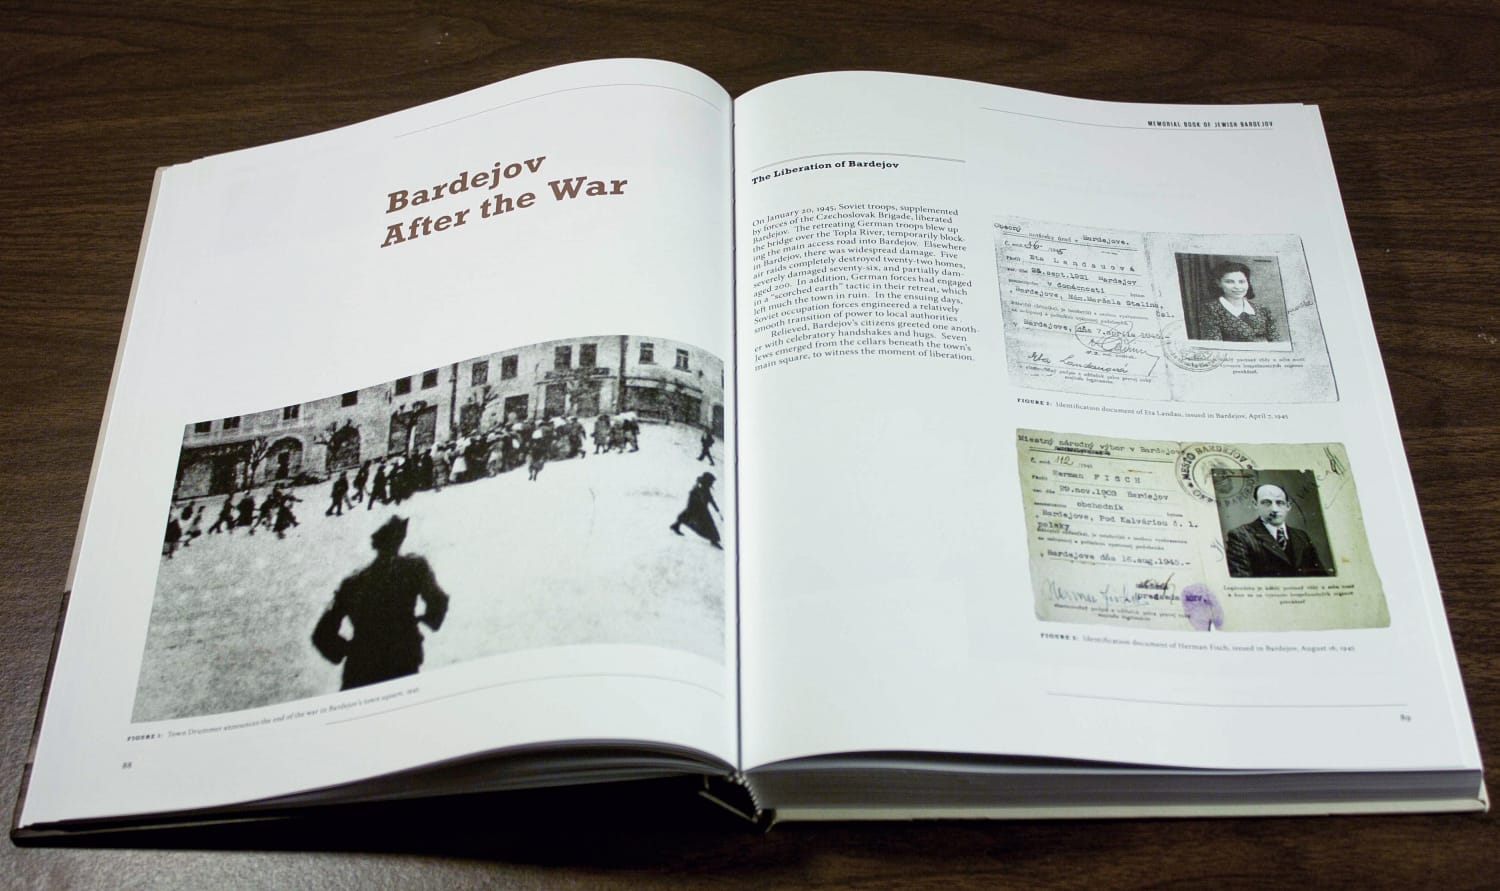 Chapter 3: Bardejov After the War